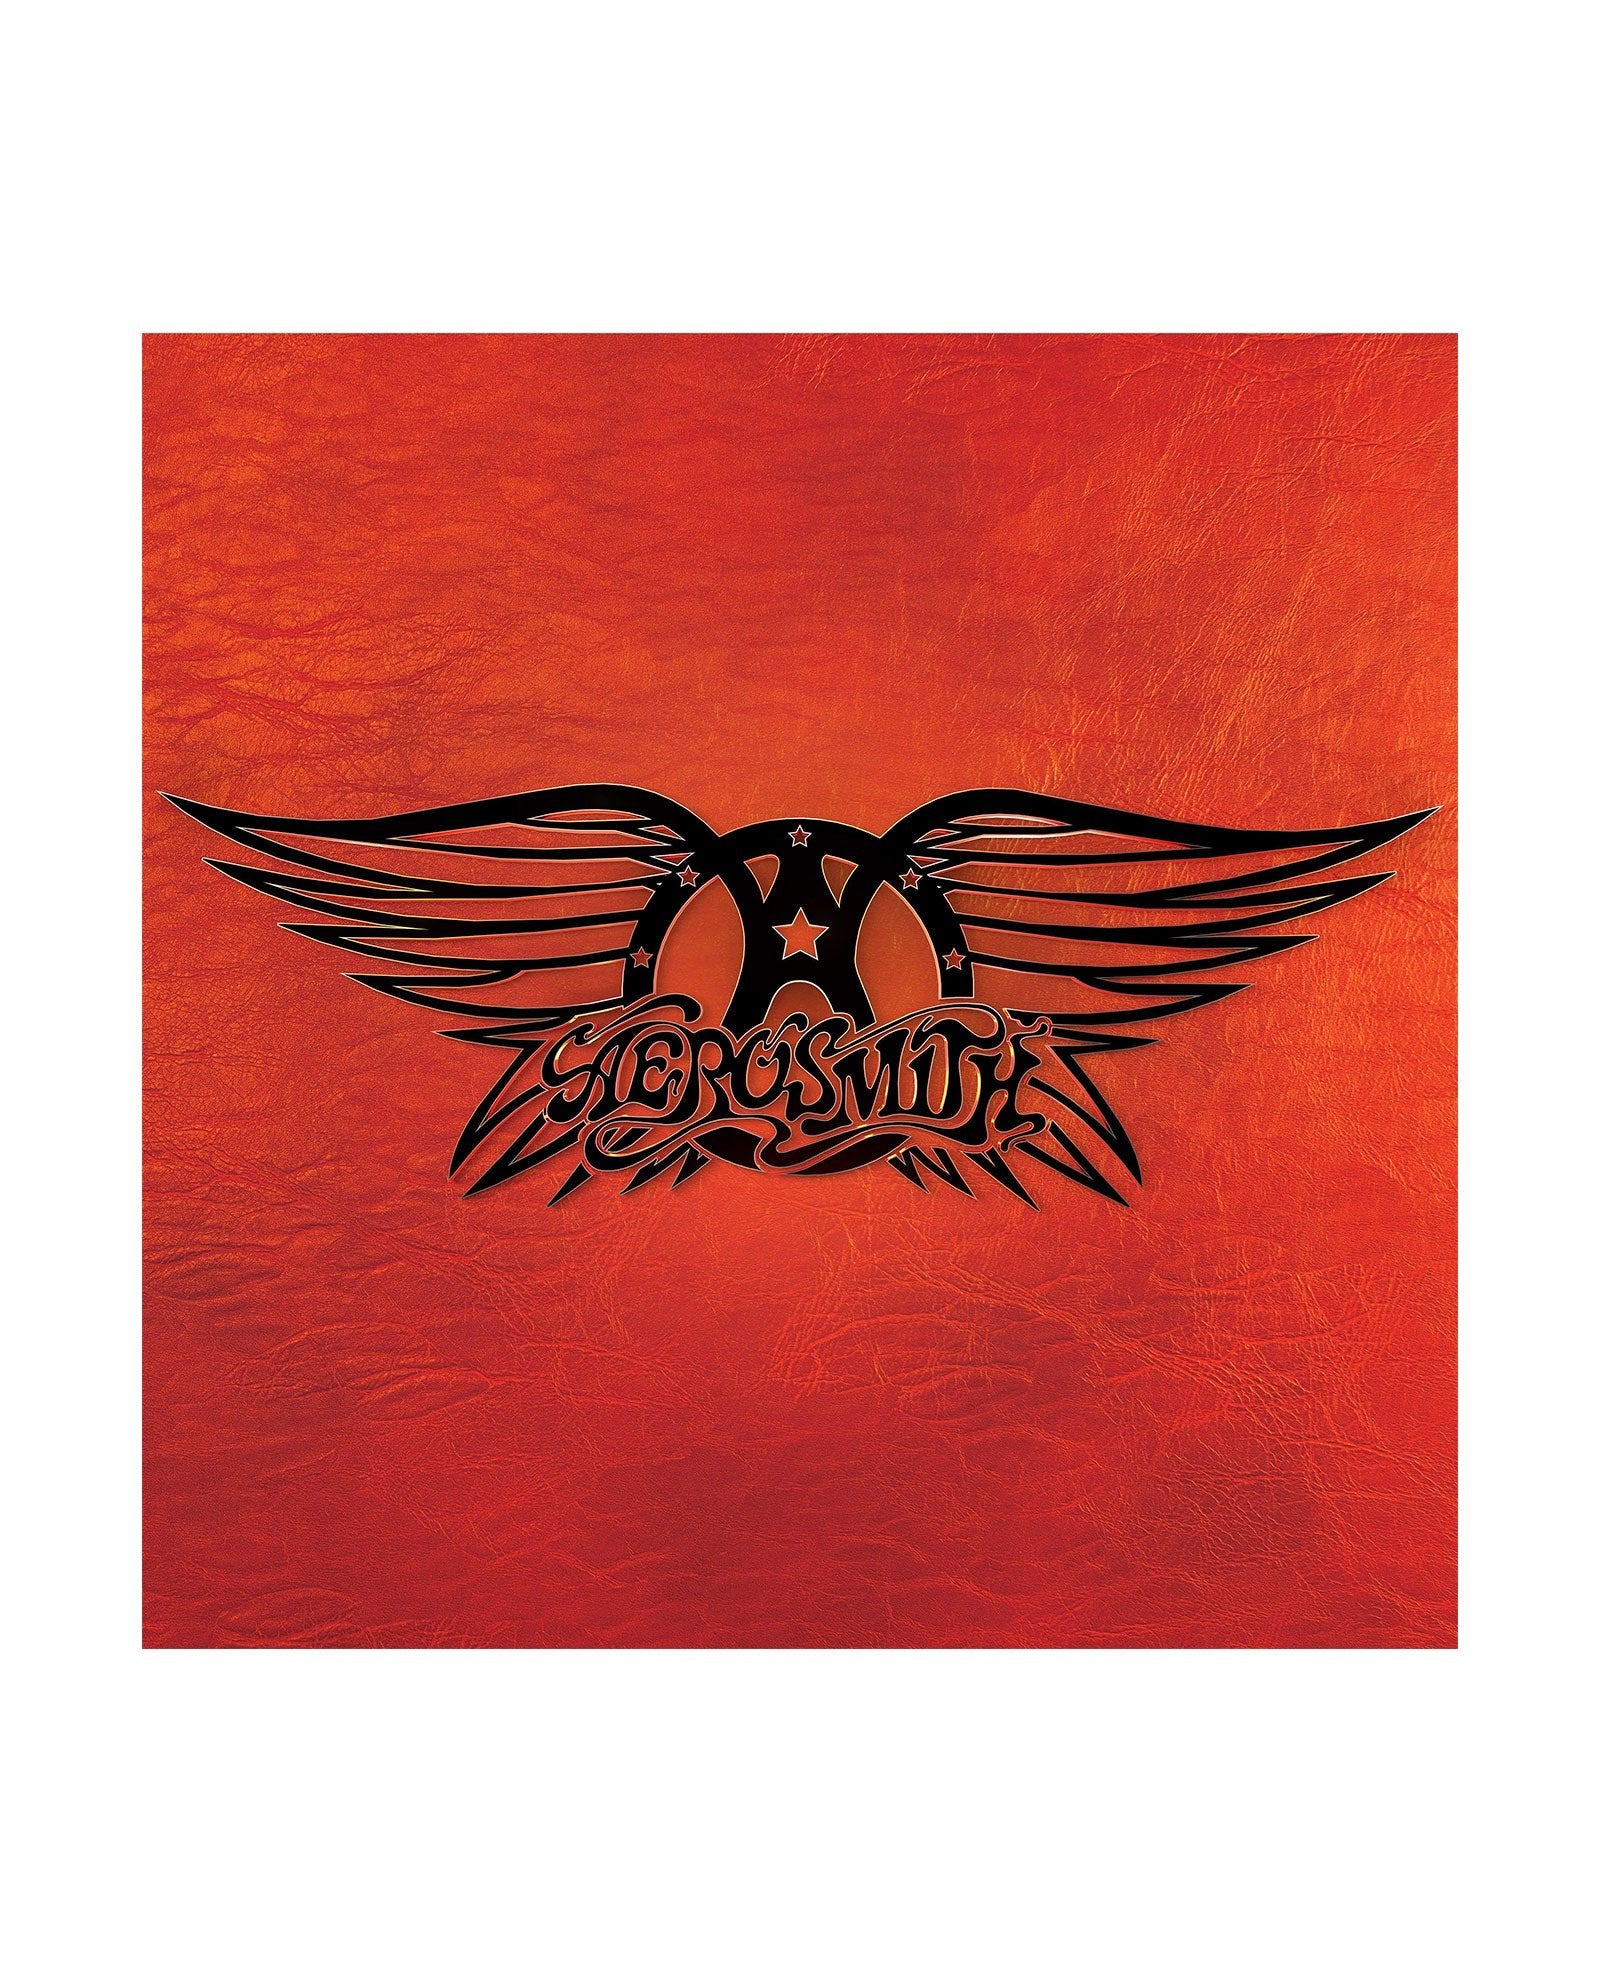 Aerosmith - 3CD Deluxe "Greatest Hits " - D2fy · Rocktud - Rocktud